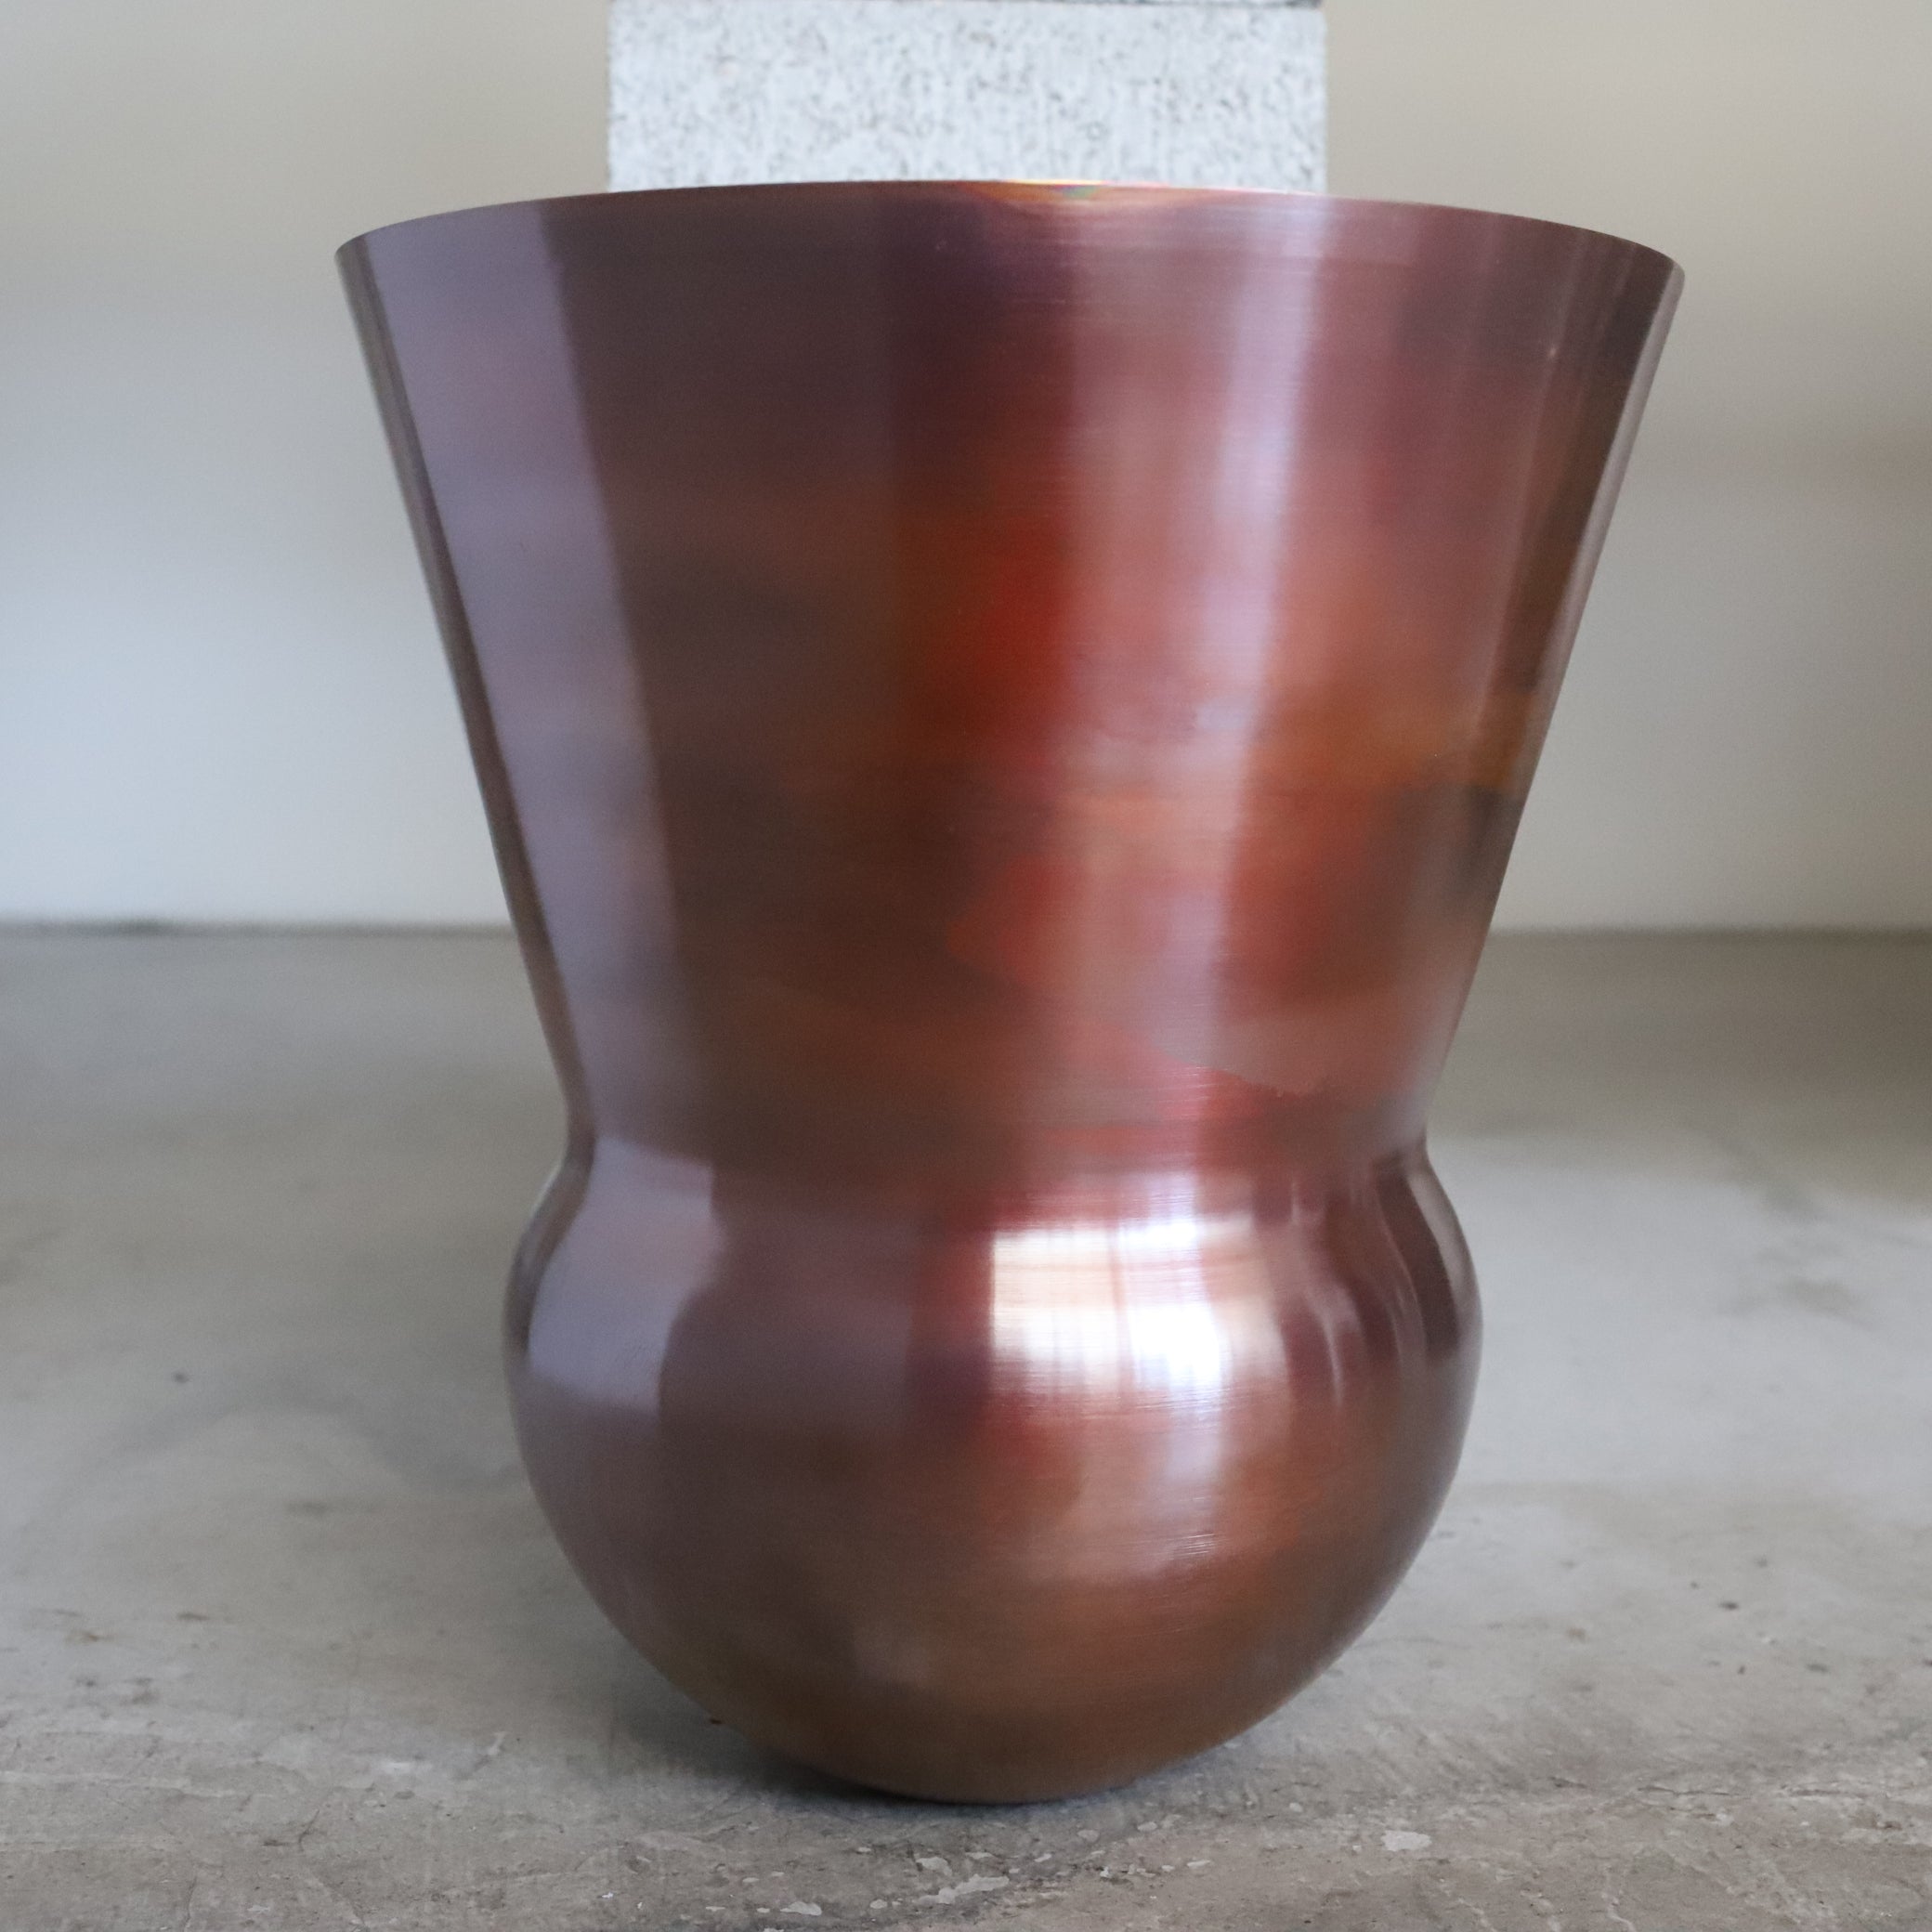 copper pot　TYPE #8 〈bordeaux〉